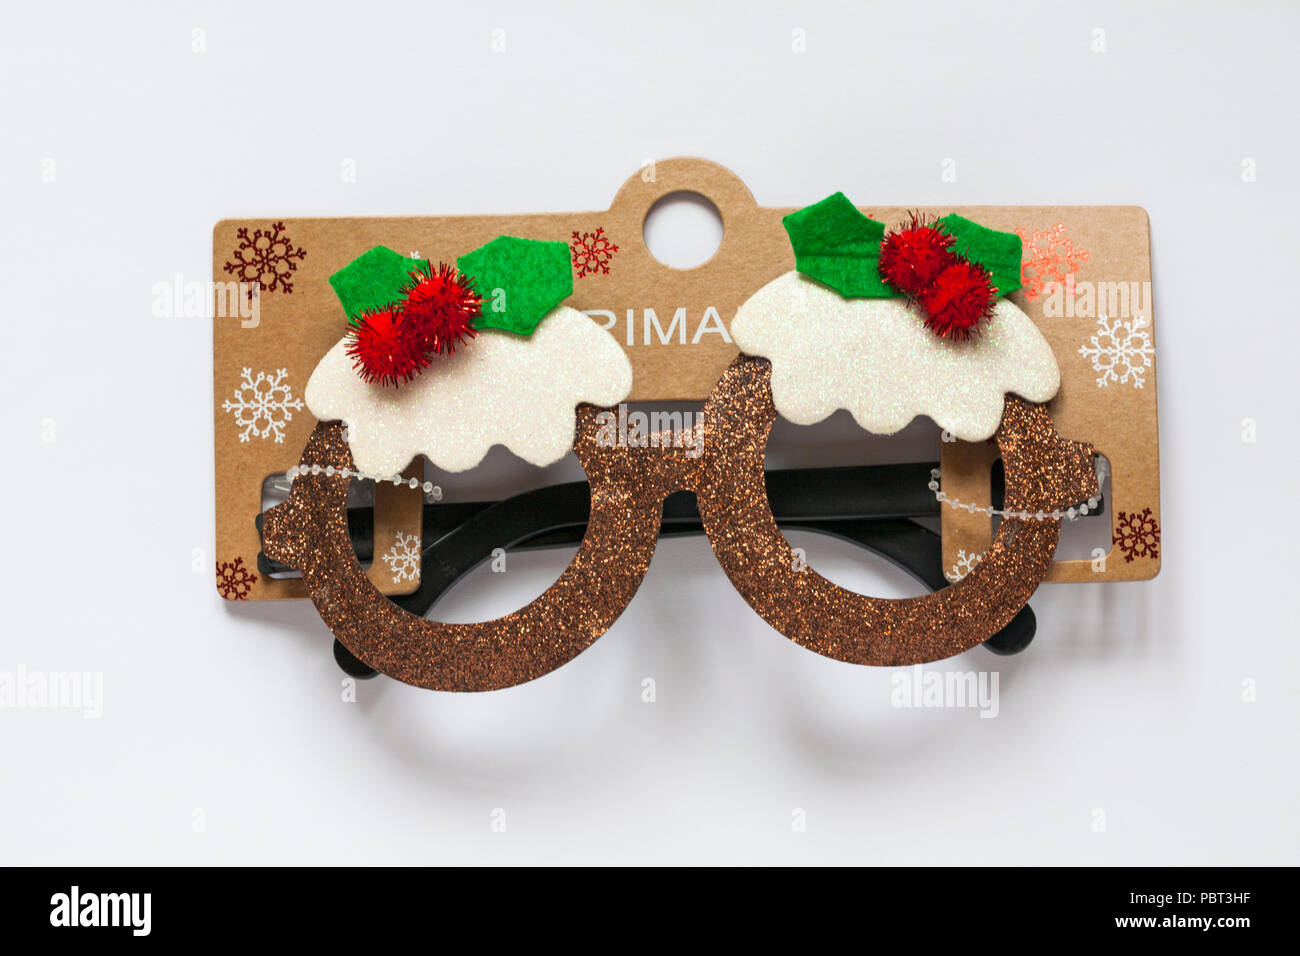 Primark Novelty Christmas Pudding lunettes scintillantes pour Noël isolé sur fond blanc Banque D'Images